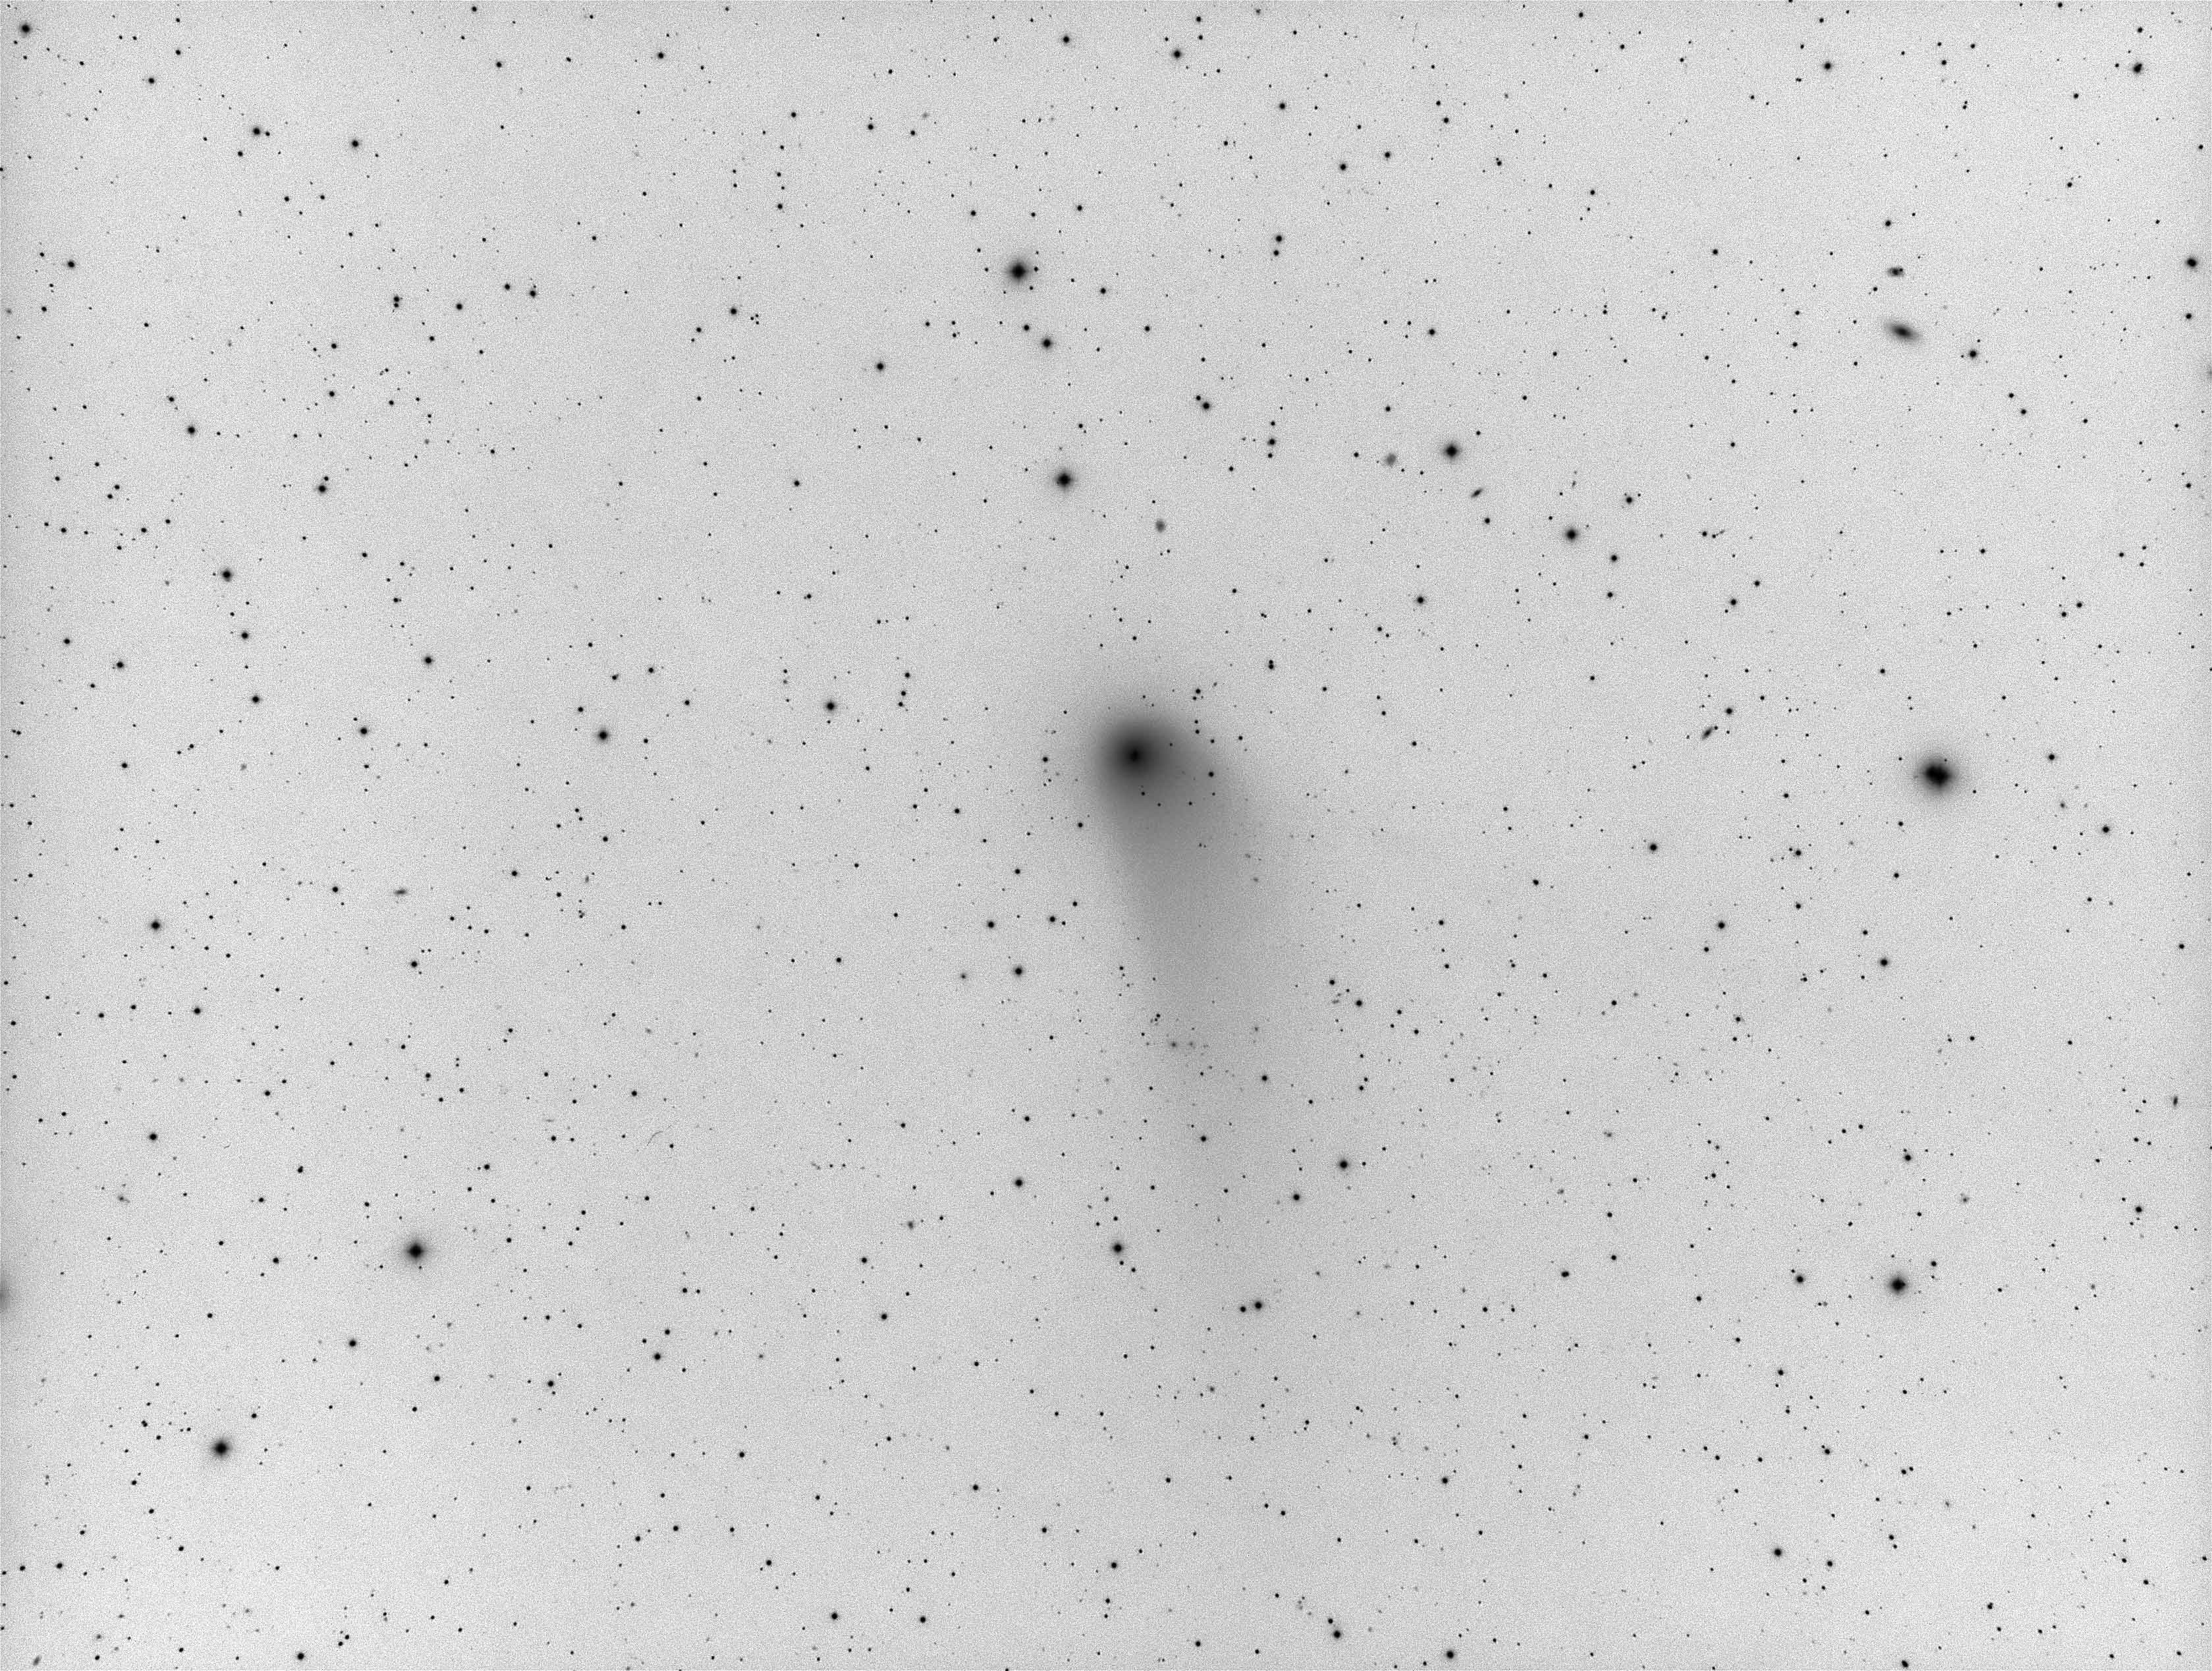 Comet PanStarrs inverted.